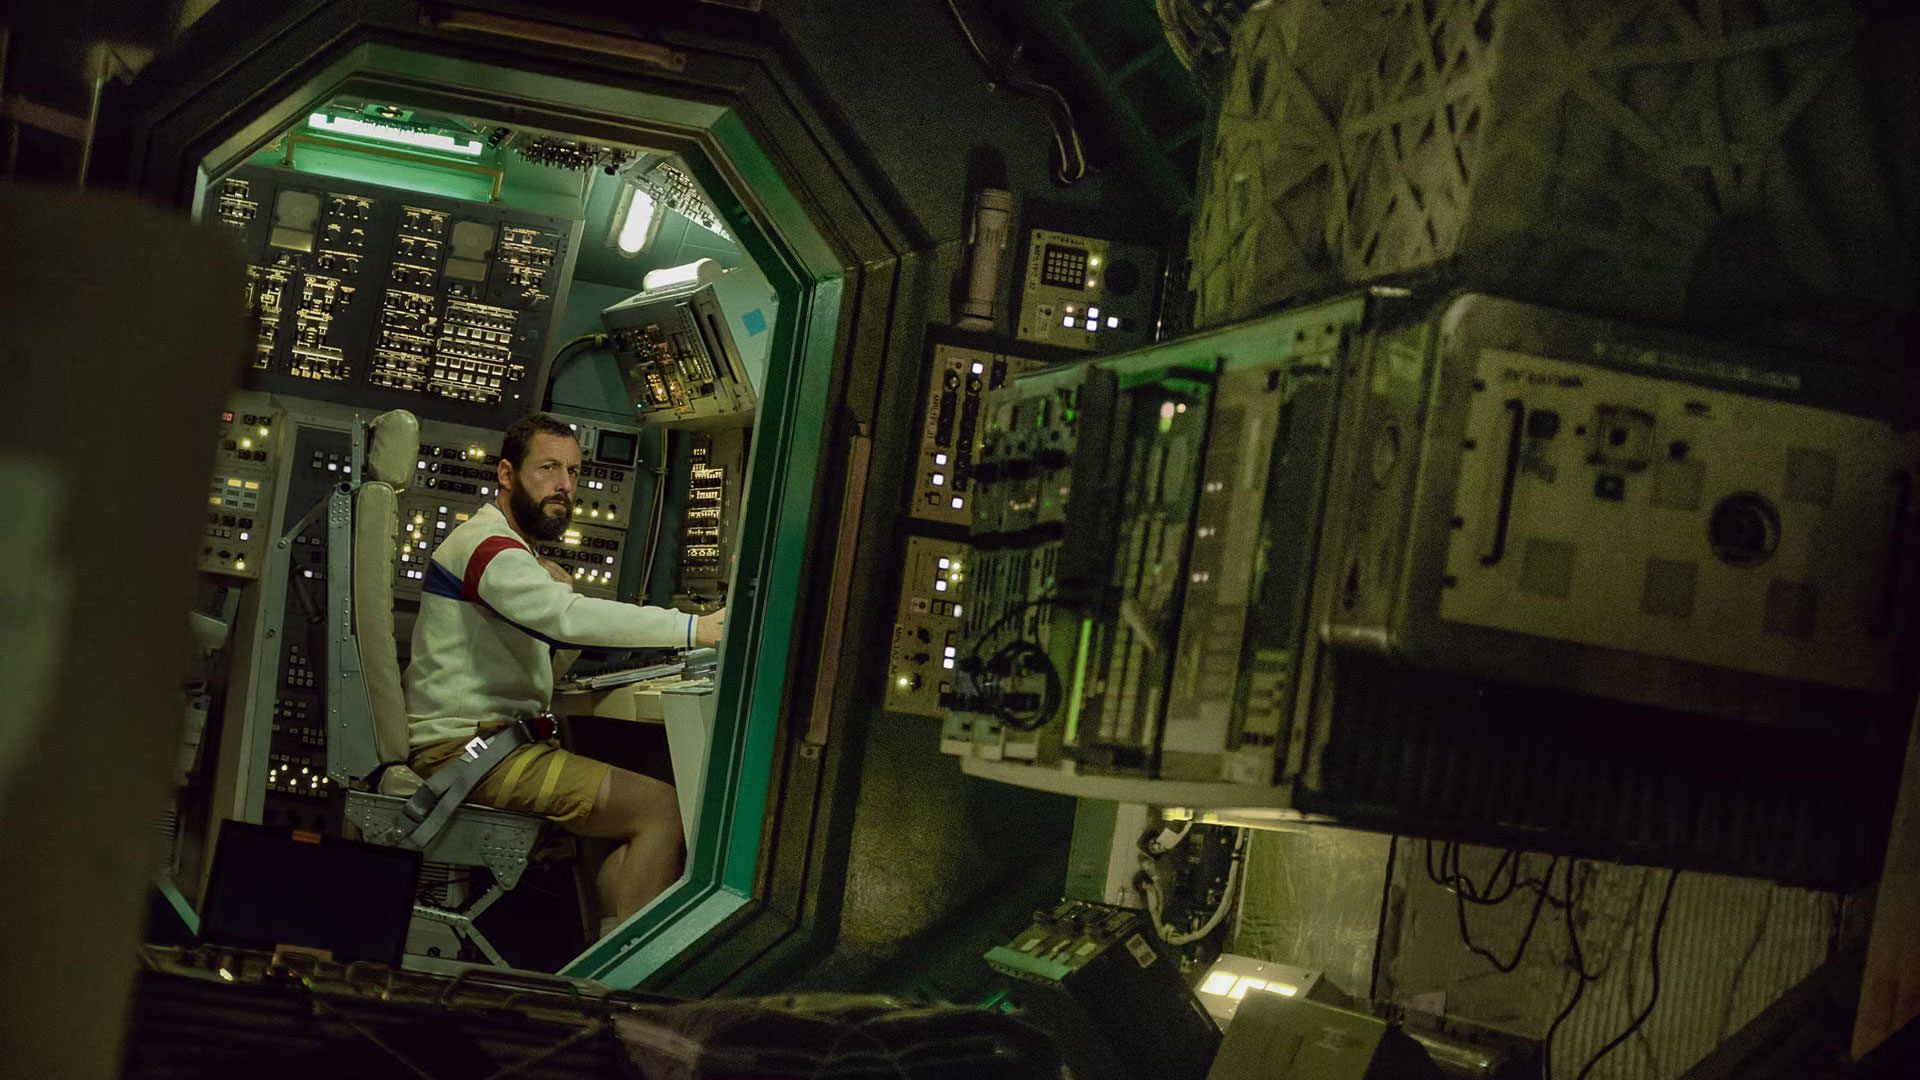 آدام سندلر در صحنه ای از فیلم فضانورد جان رنک در داخل یک سفینه فضایی نشسته است